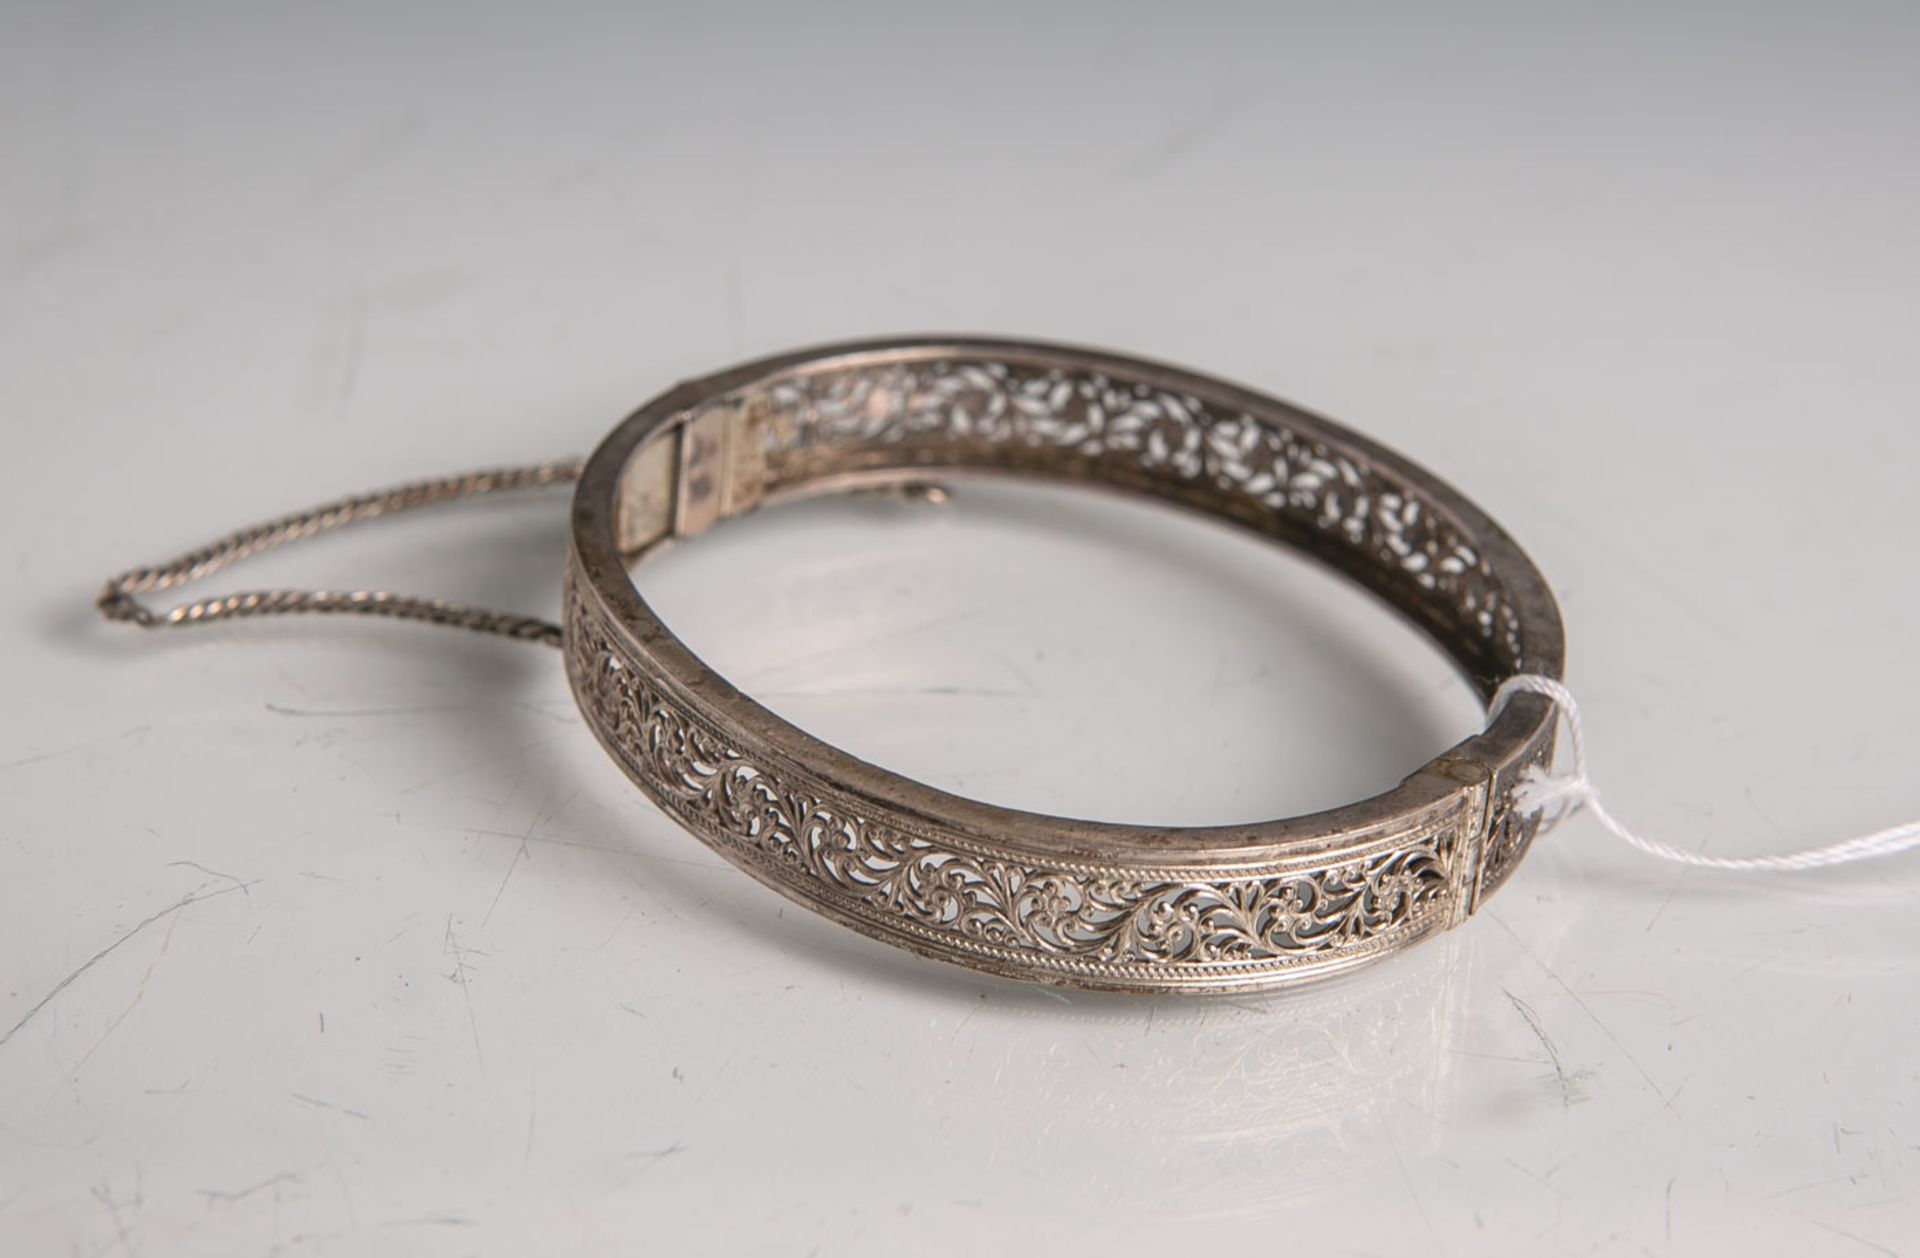 Damenarmreif 800 Silber (Hersteller unbekannt), ovale Form, mit durchstochenemstilisiertem